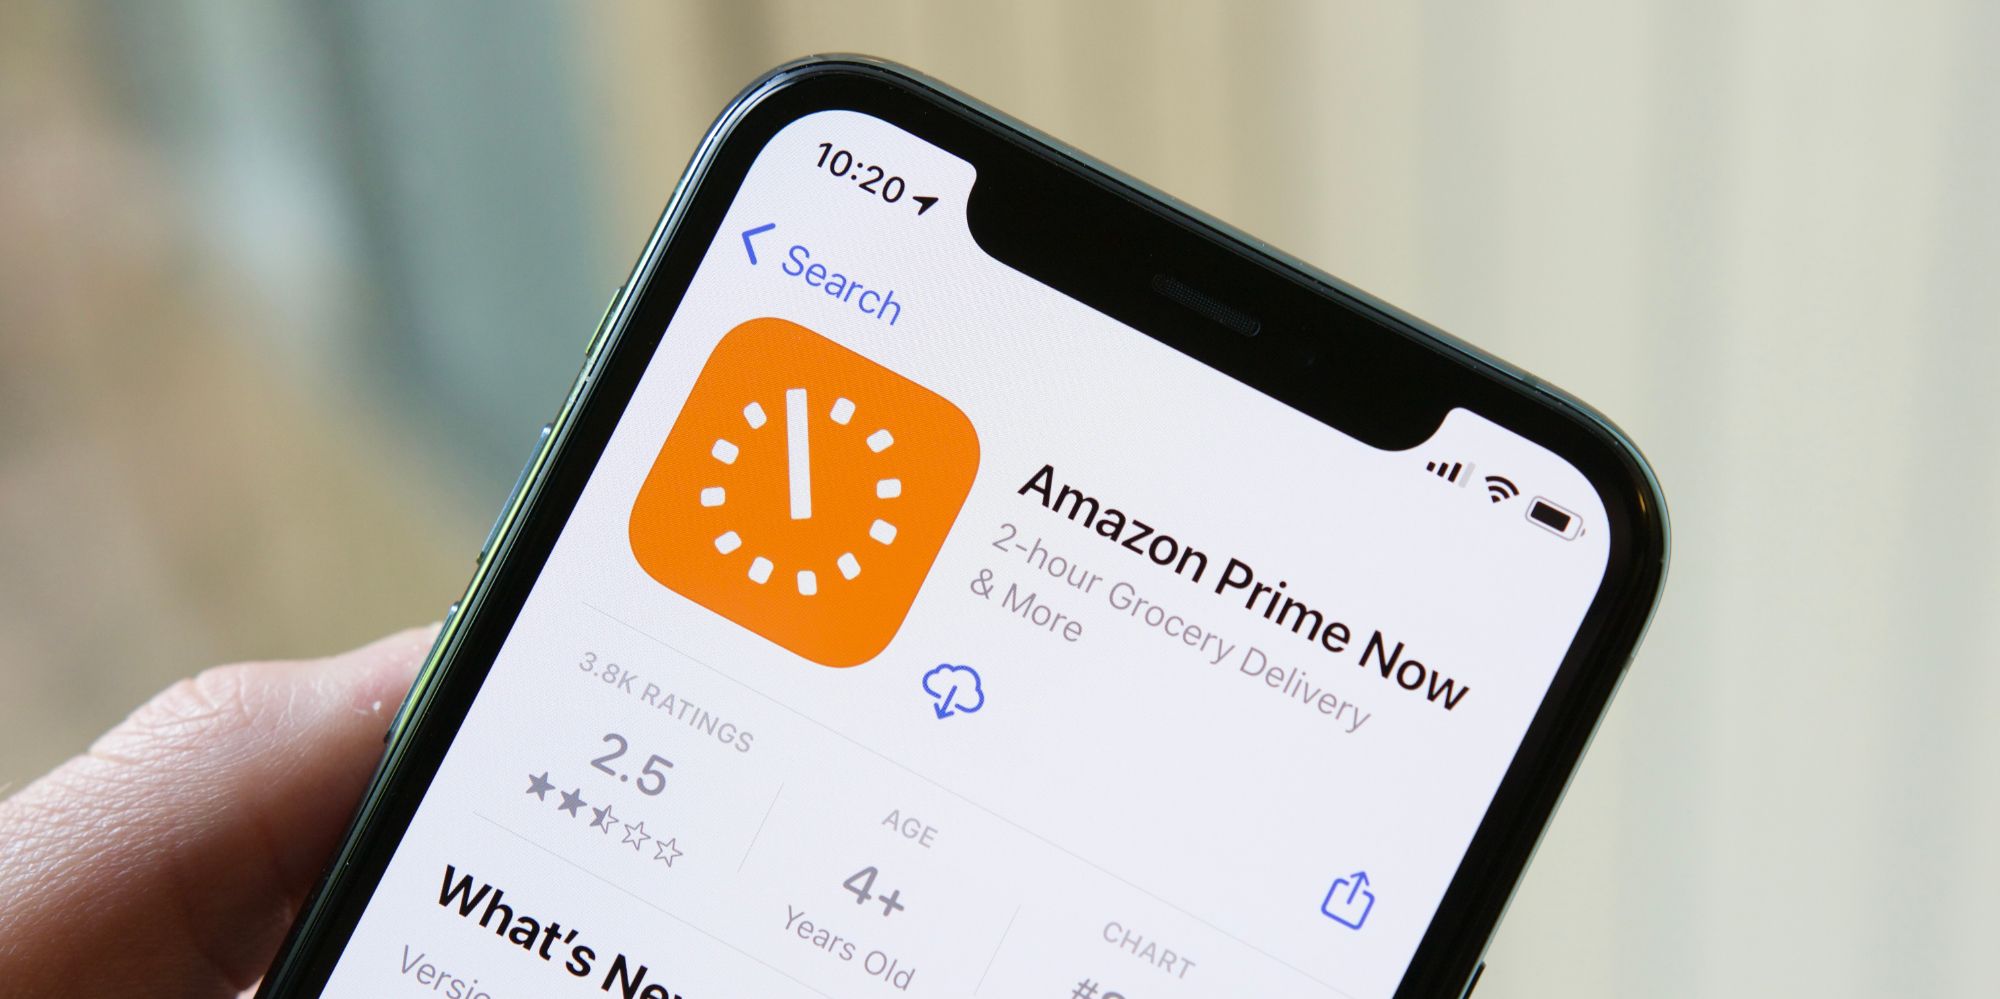 Amazon Prime Now app in the App Store